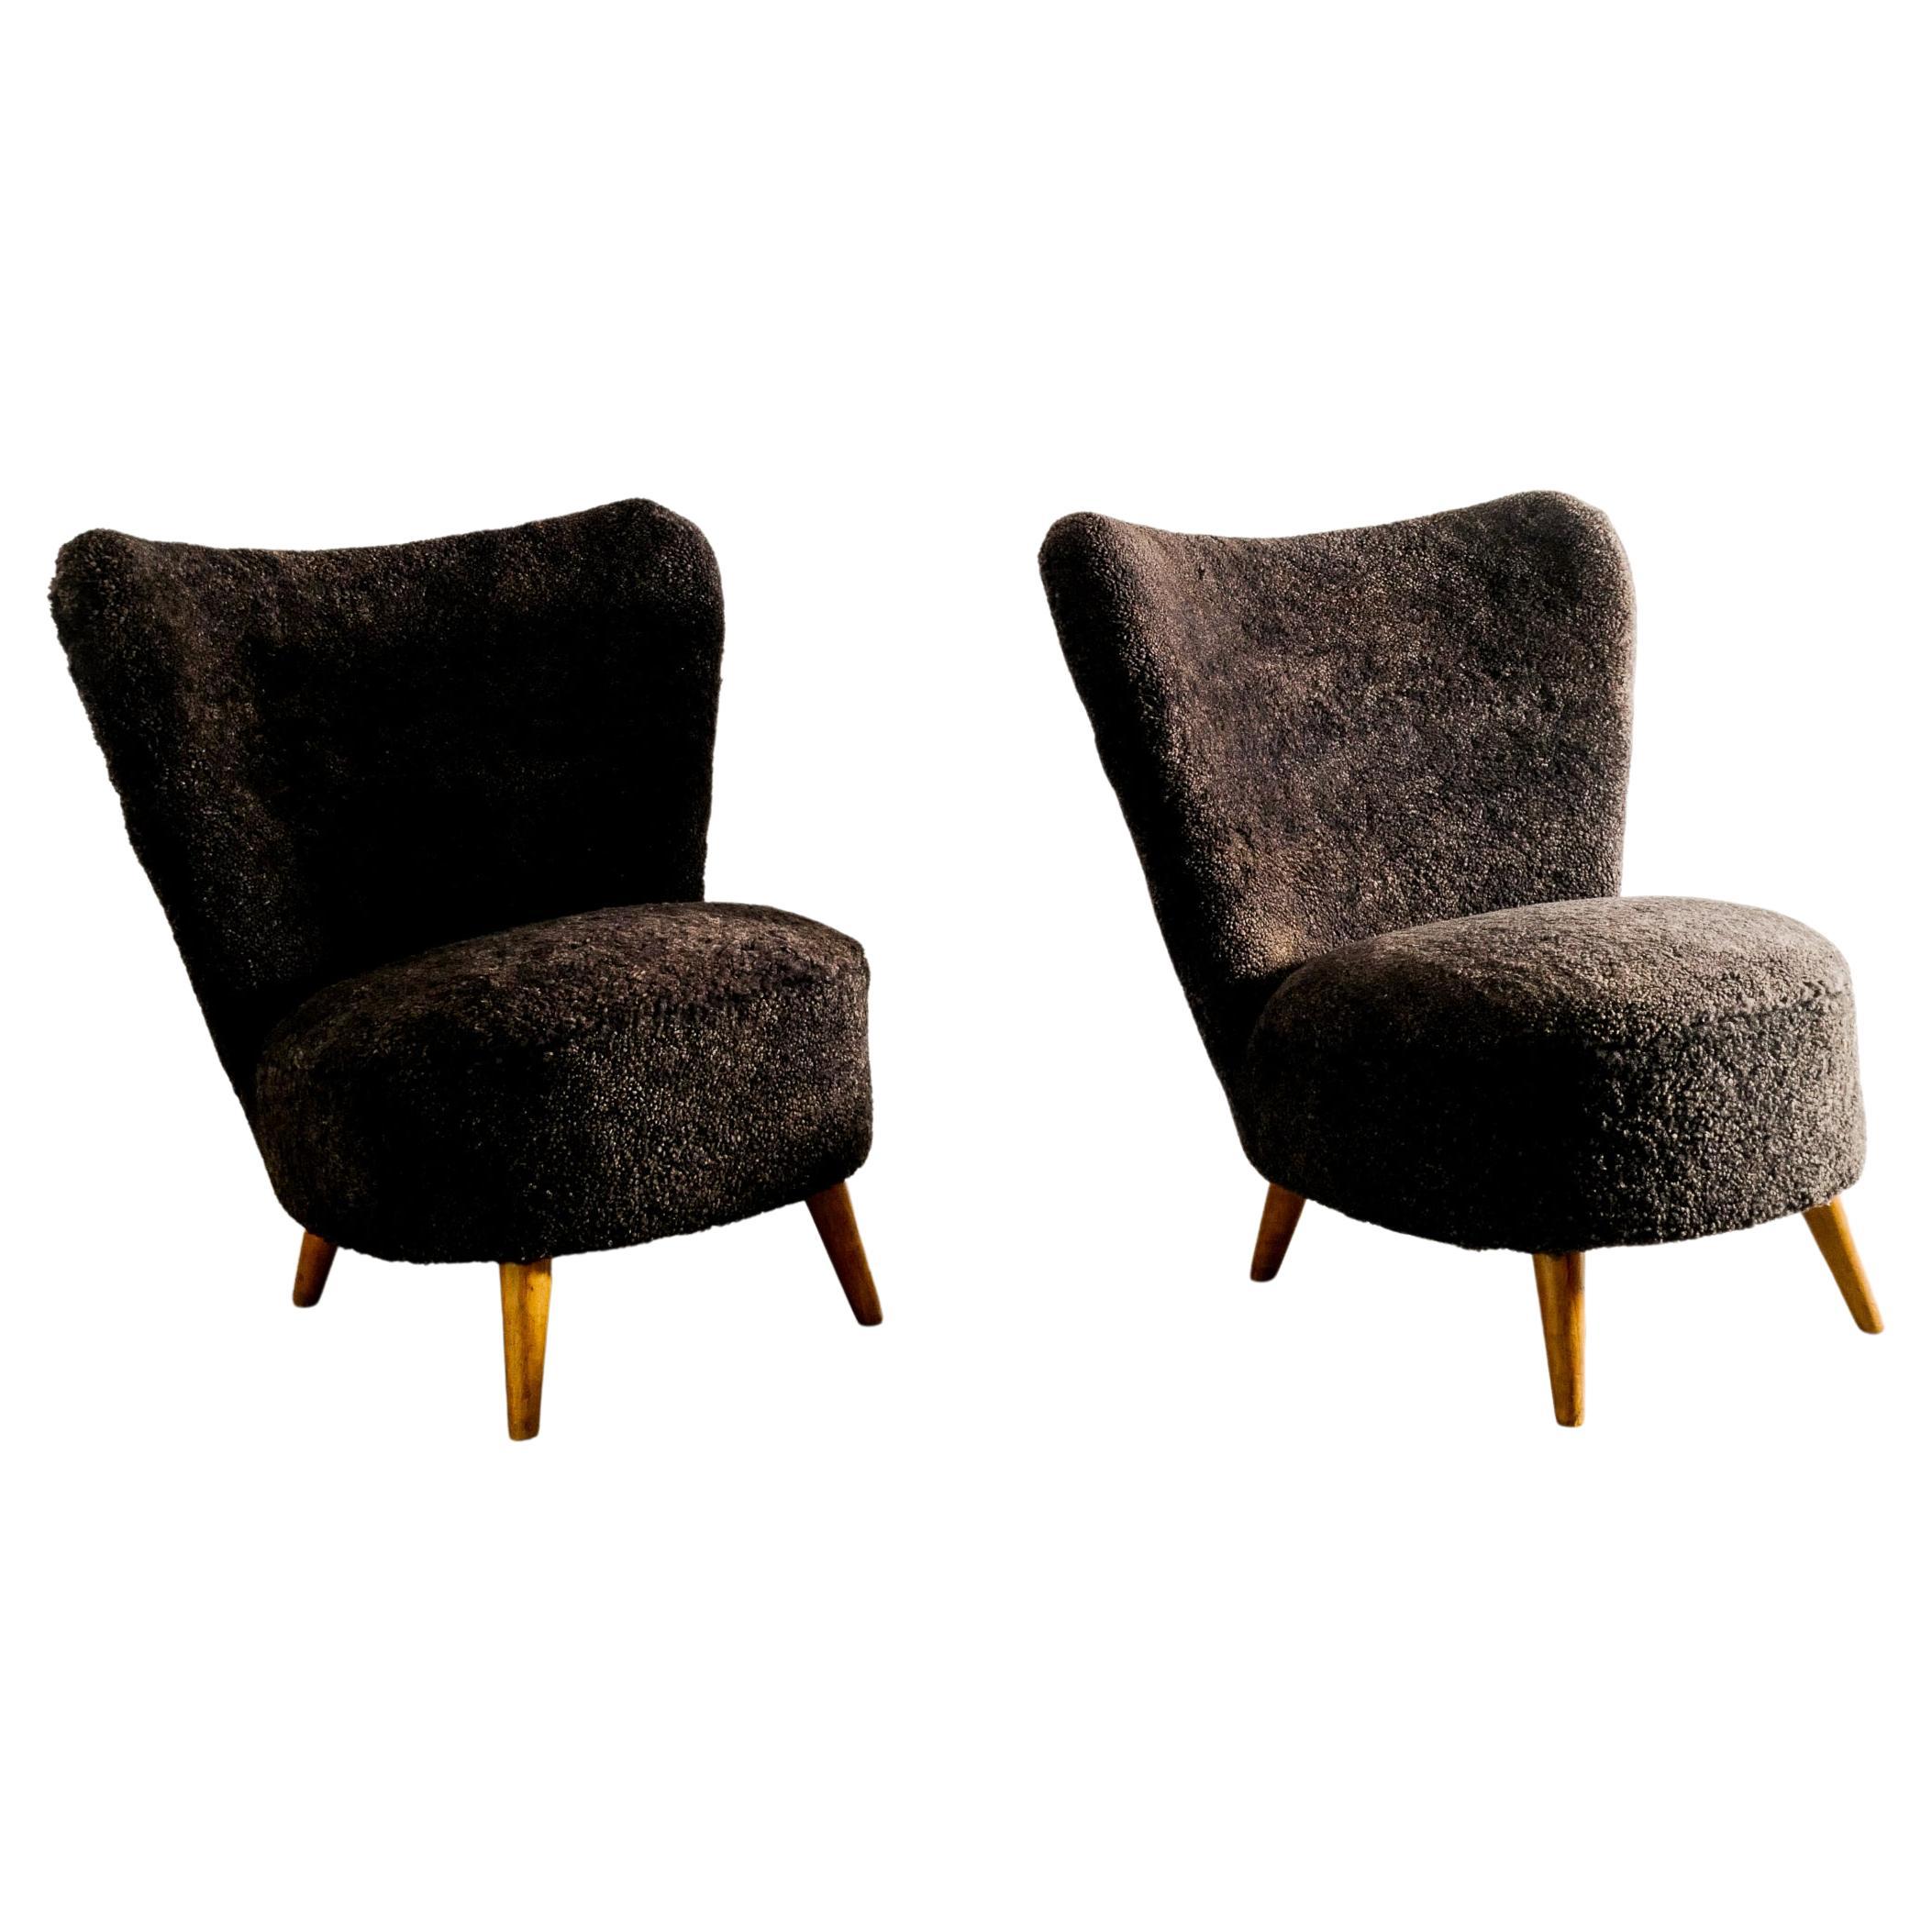 Paar schwedische Sessel, Attr. Gösta Jonsson, hergestellt in Schweden, 1940er Jahre